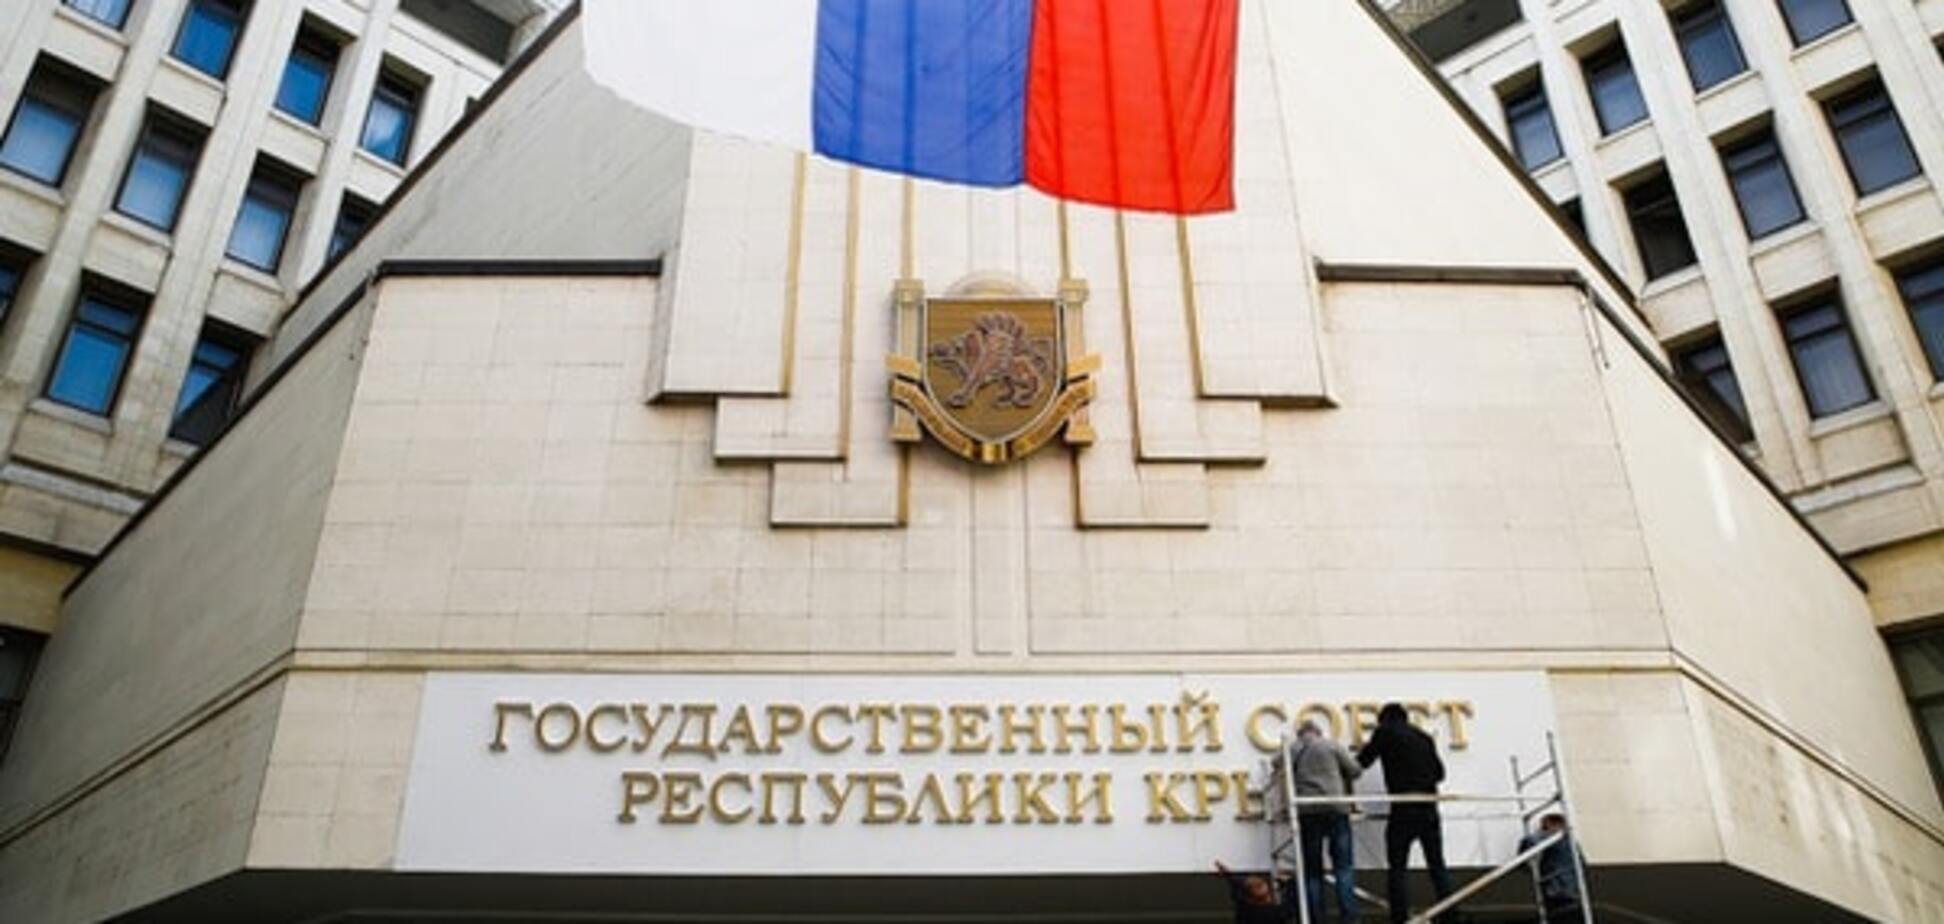 Бунт на корабле! В Севастополе инициировали отставку 'неэффективного правительства'